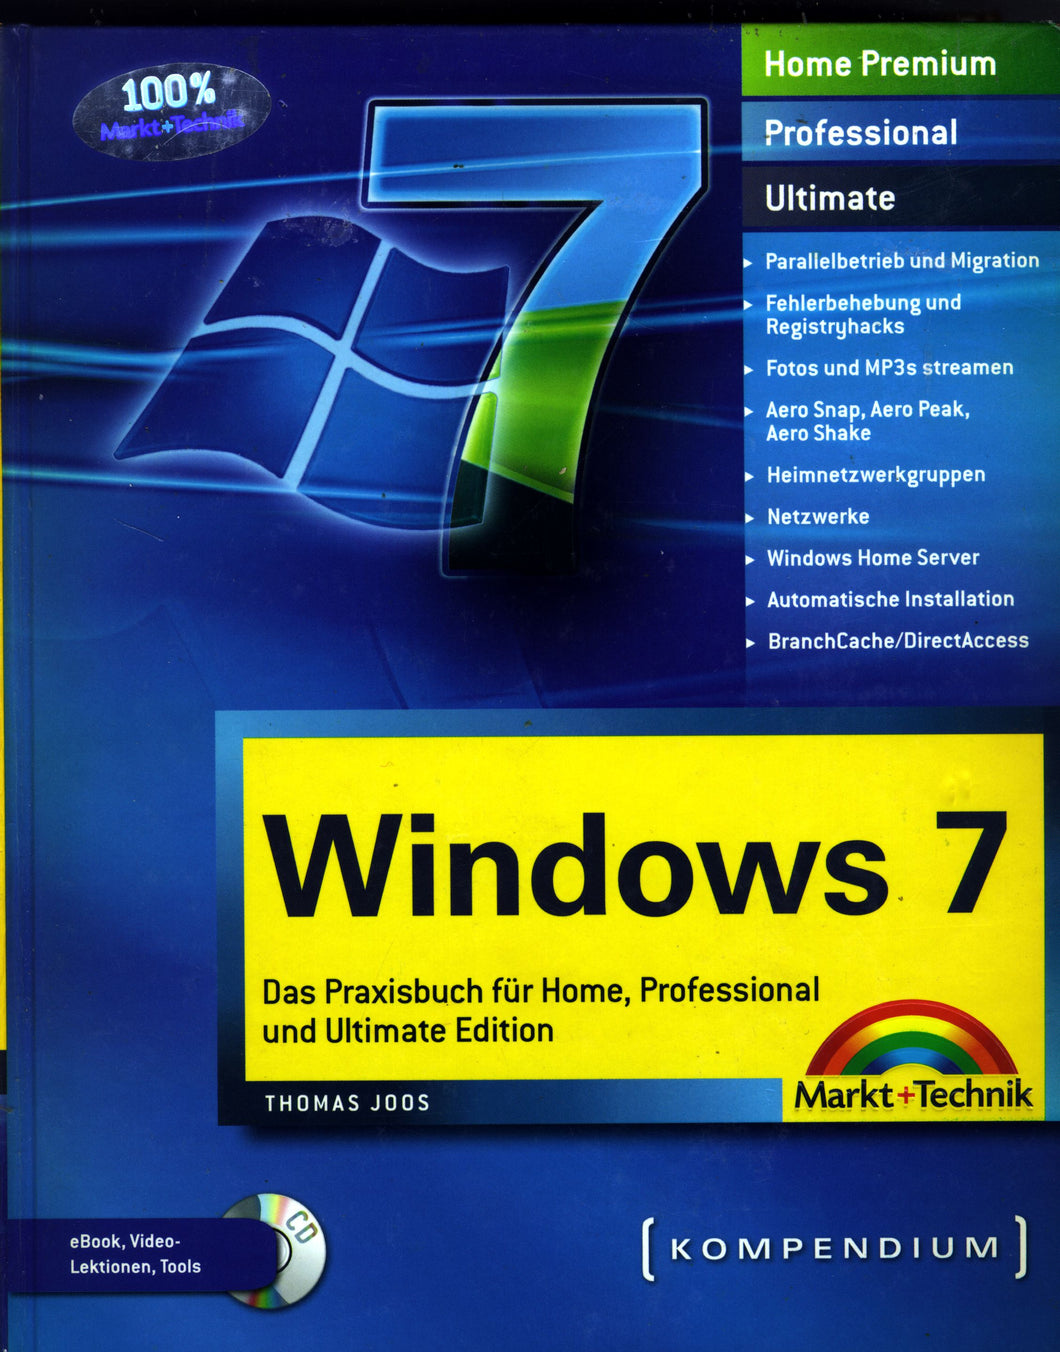 Windows 7 Kompendium